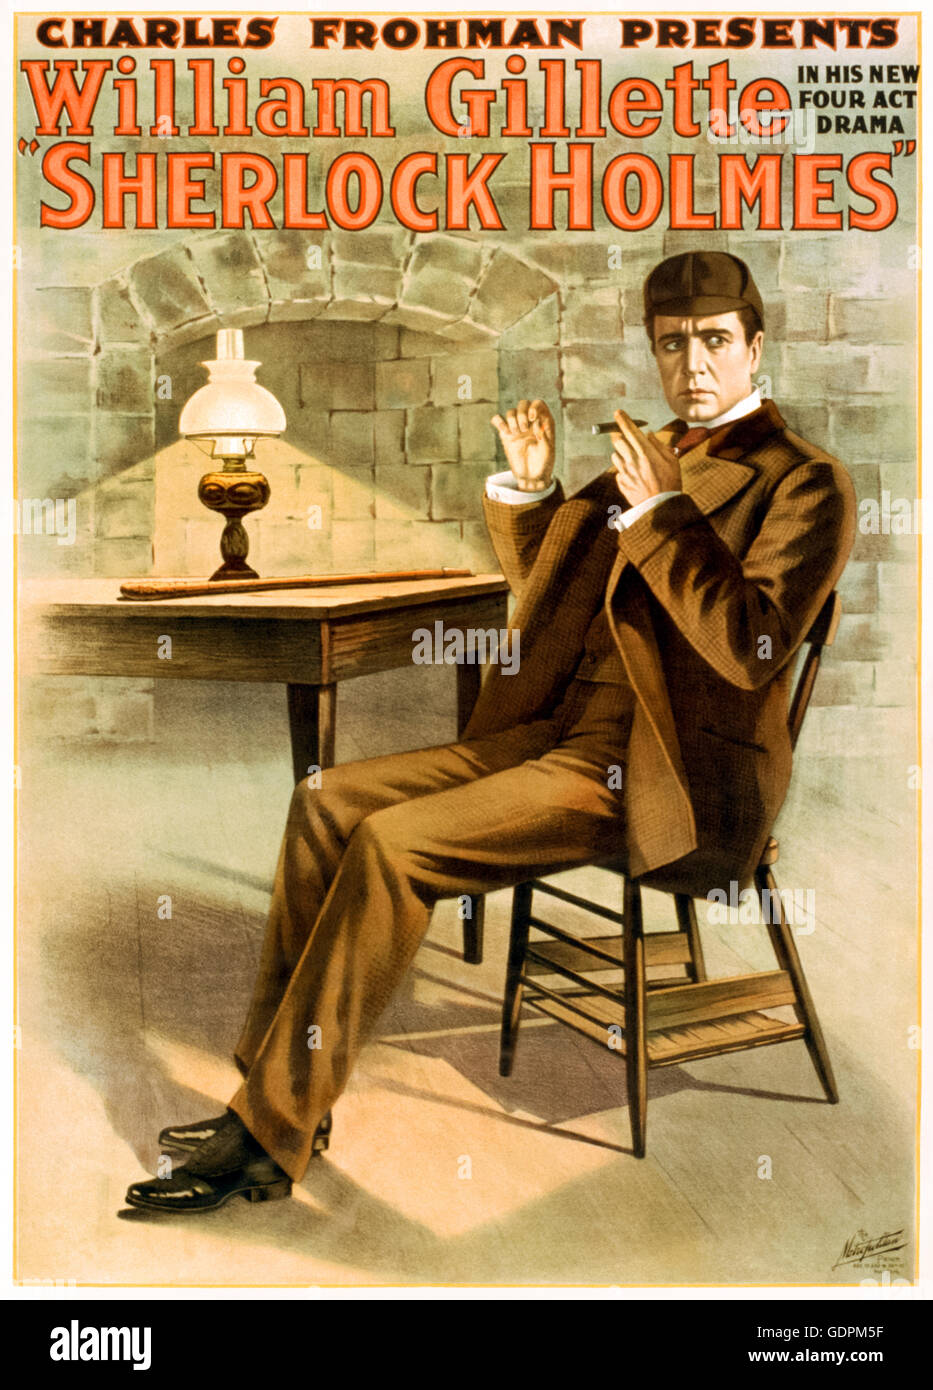 "Sherlock Holmes" Playbill für ein Theaterstück adaptiert von Geschichten von Sir Arthur Conan Doyle von William Gillette (1853 – 1937) spielte auch die Titelrolle von Garrick Theatre, New York City während sein Broadway-Debüt im Jahre 1899. Siehe Beschreibung für mehr Informationen. Stockfoto